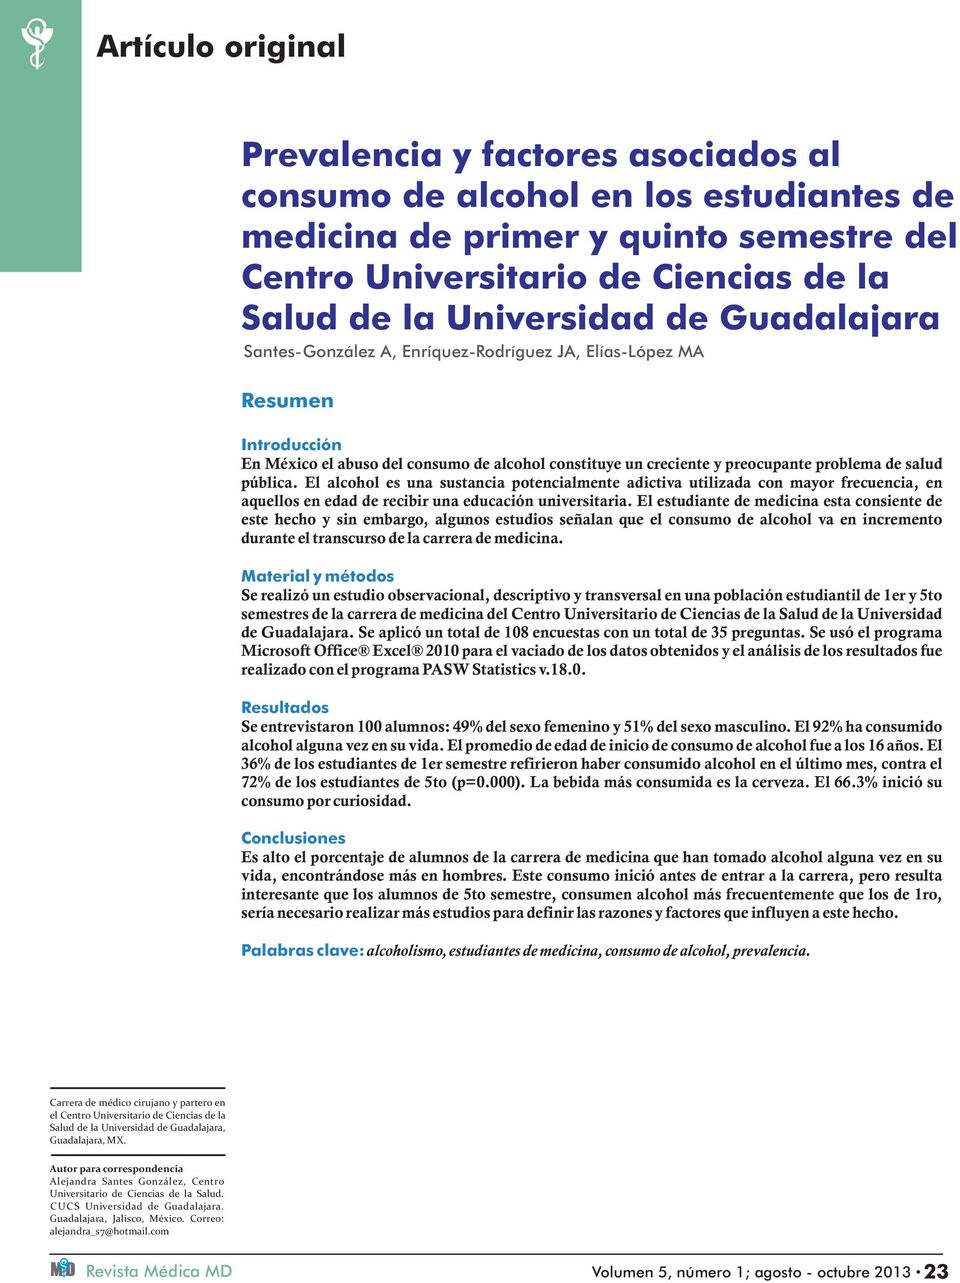 El alcohol es una sustancia potencialmente adictiva utilizada con mayor frecuencia, en aquellos en edad de recibir una educación universitaria.